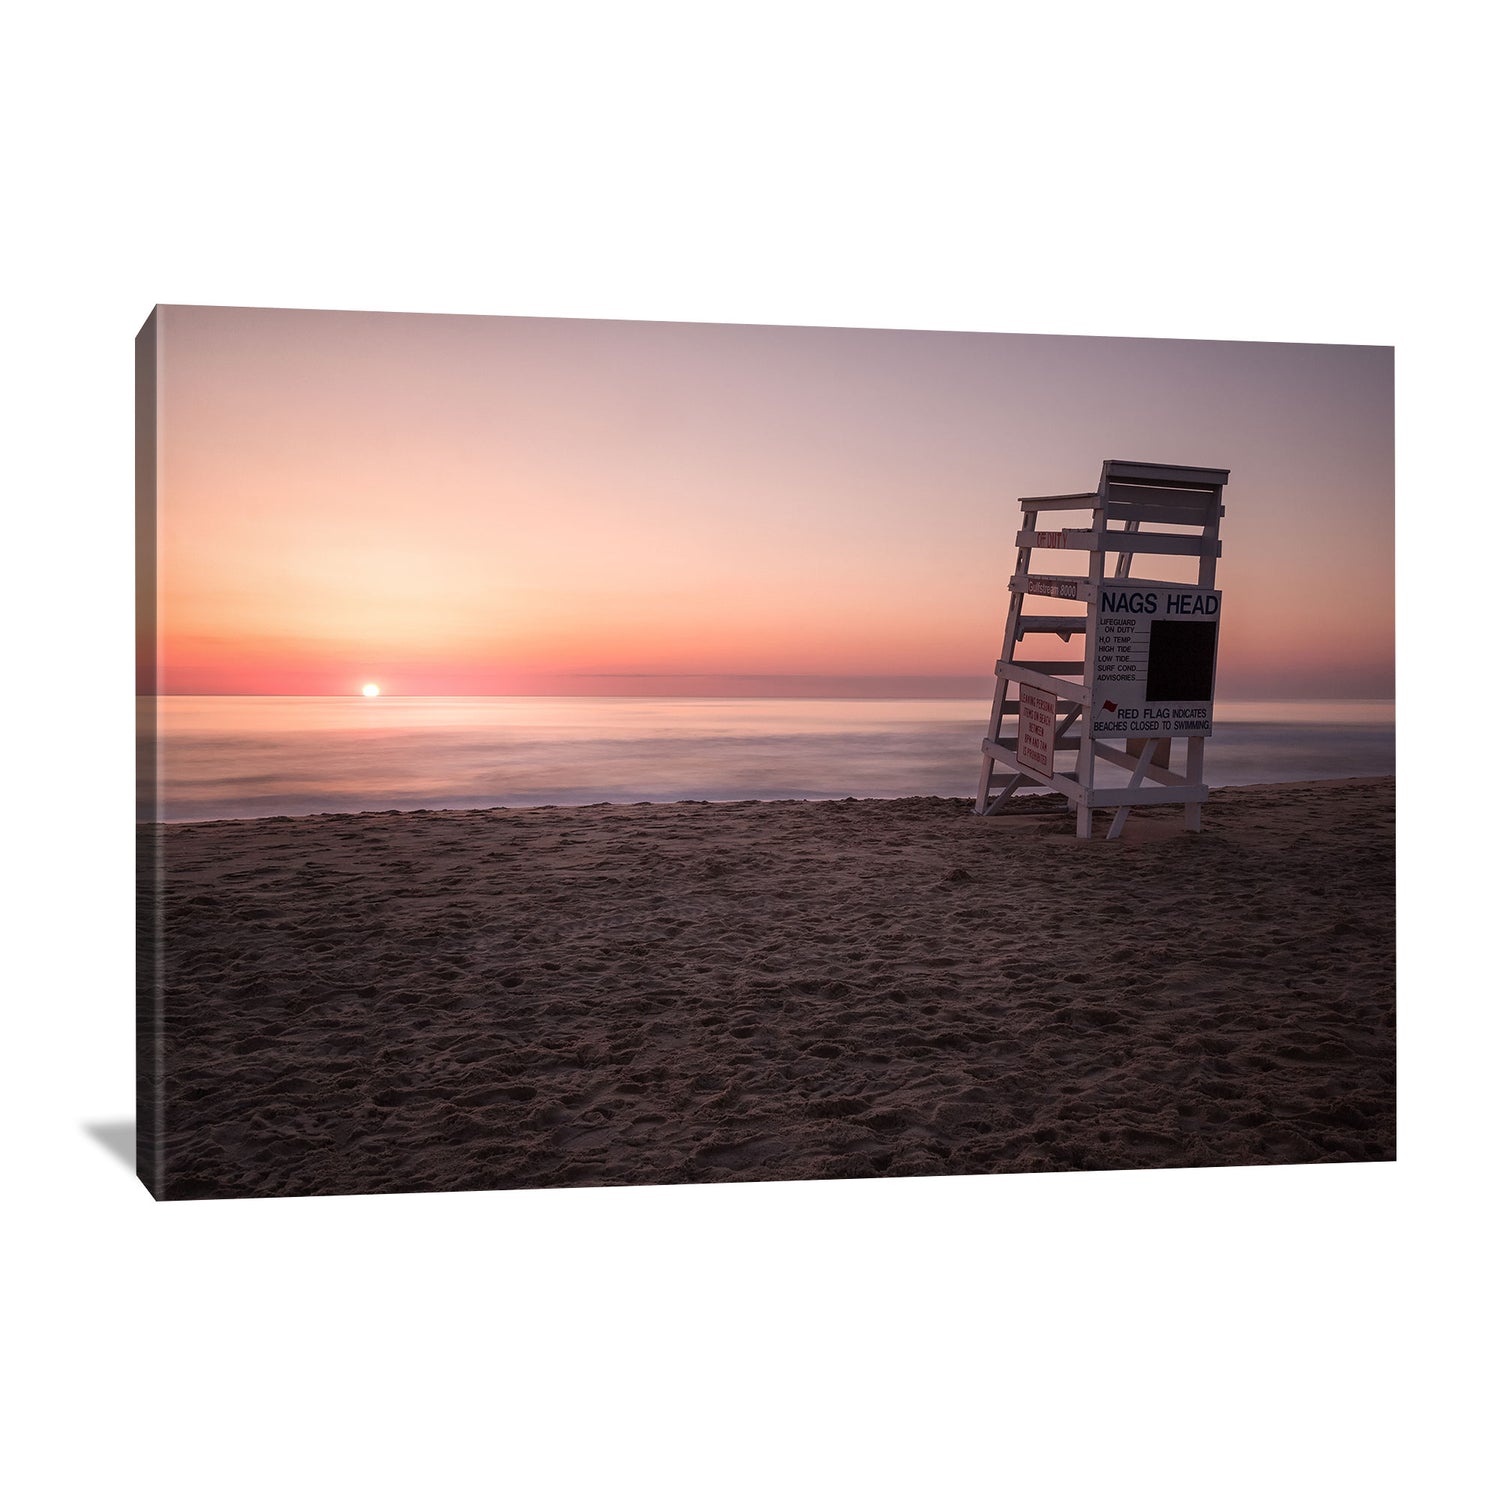 lifeguard chair at nags head beach during sunrise